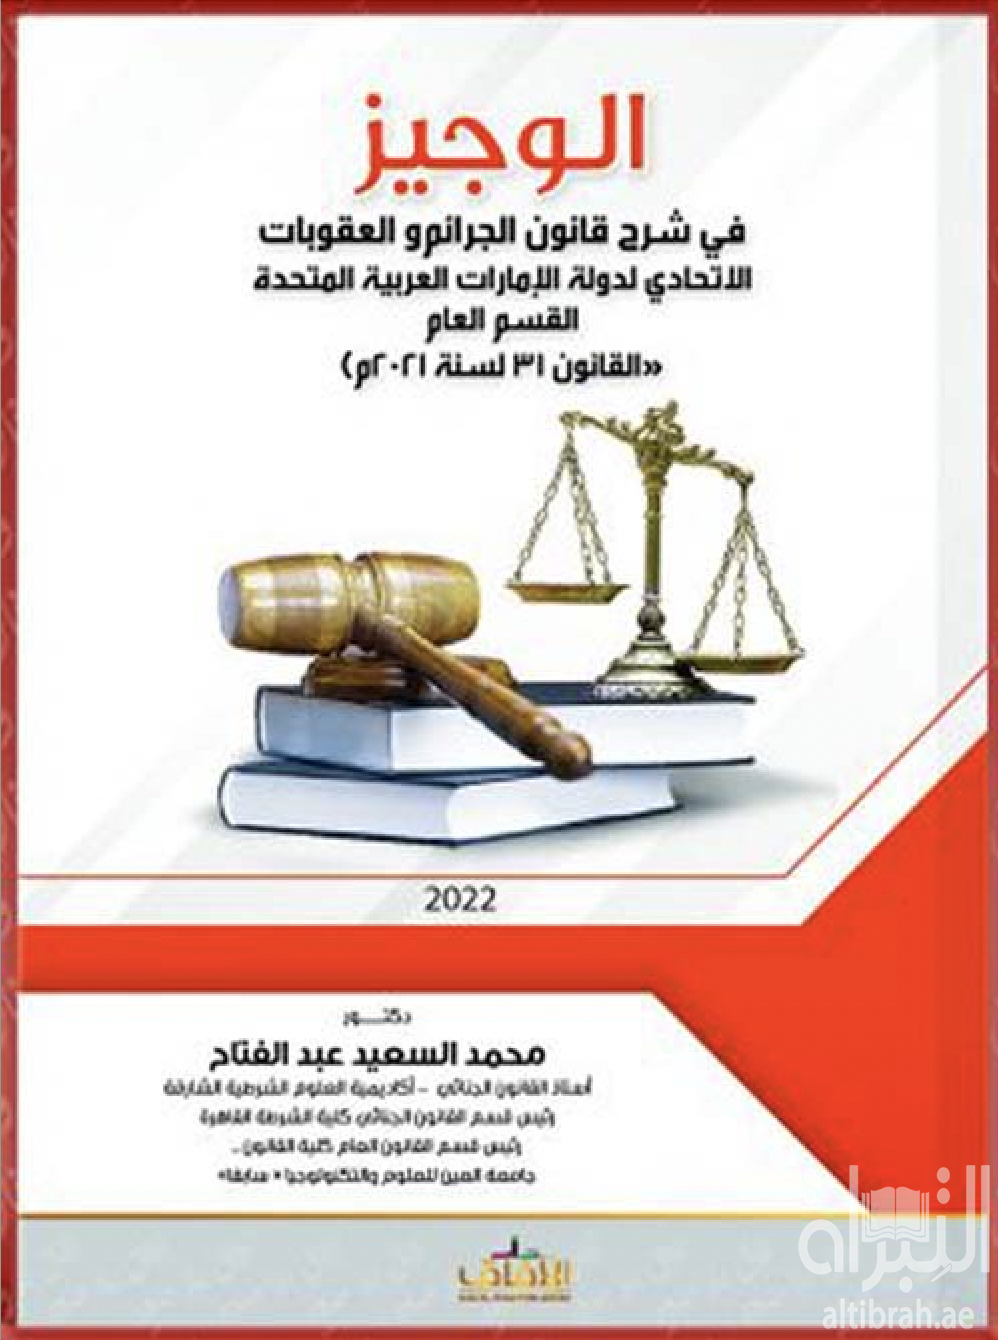 الوجيز في شرح قانون الجرائم والعقوبات الإتحادي لدولة الإمارات القسم العام ( القانون رقم 31 لسنة 2021م )